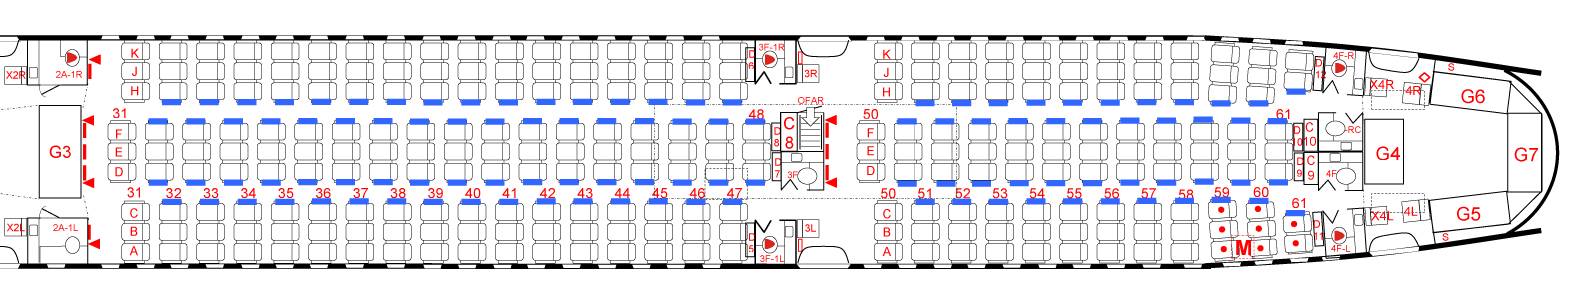 Boeing 777: обзор, схема посадочных мест, компании-эксплуатанты